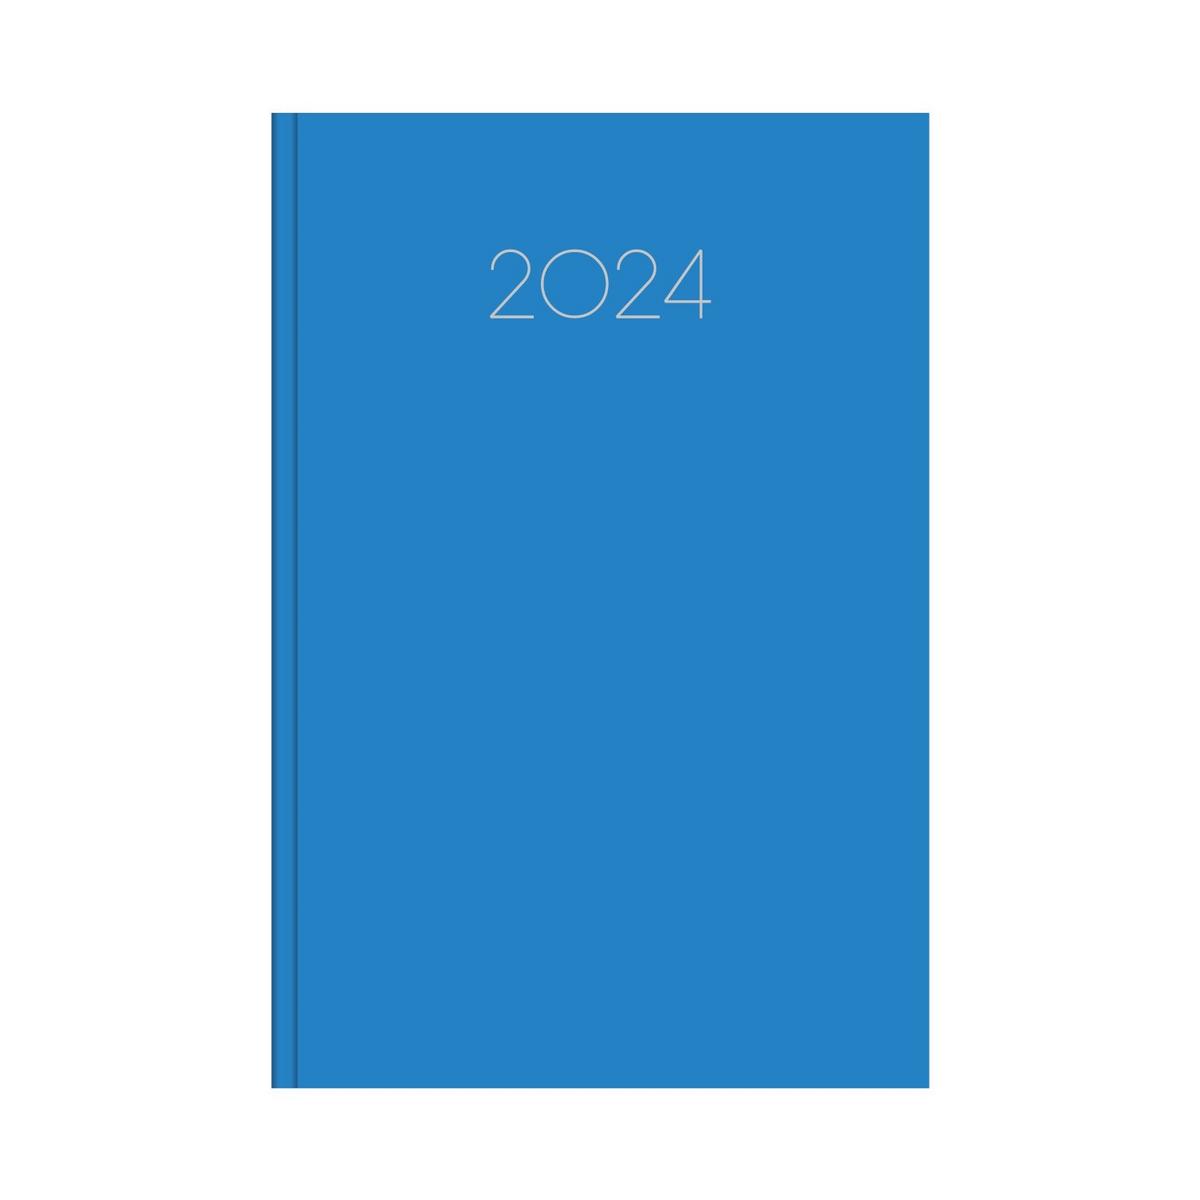 Ημερήσιο ημερολόγιο 2024 simple μπλε ανοικτό 14 x 21 cm